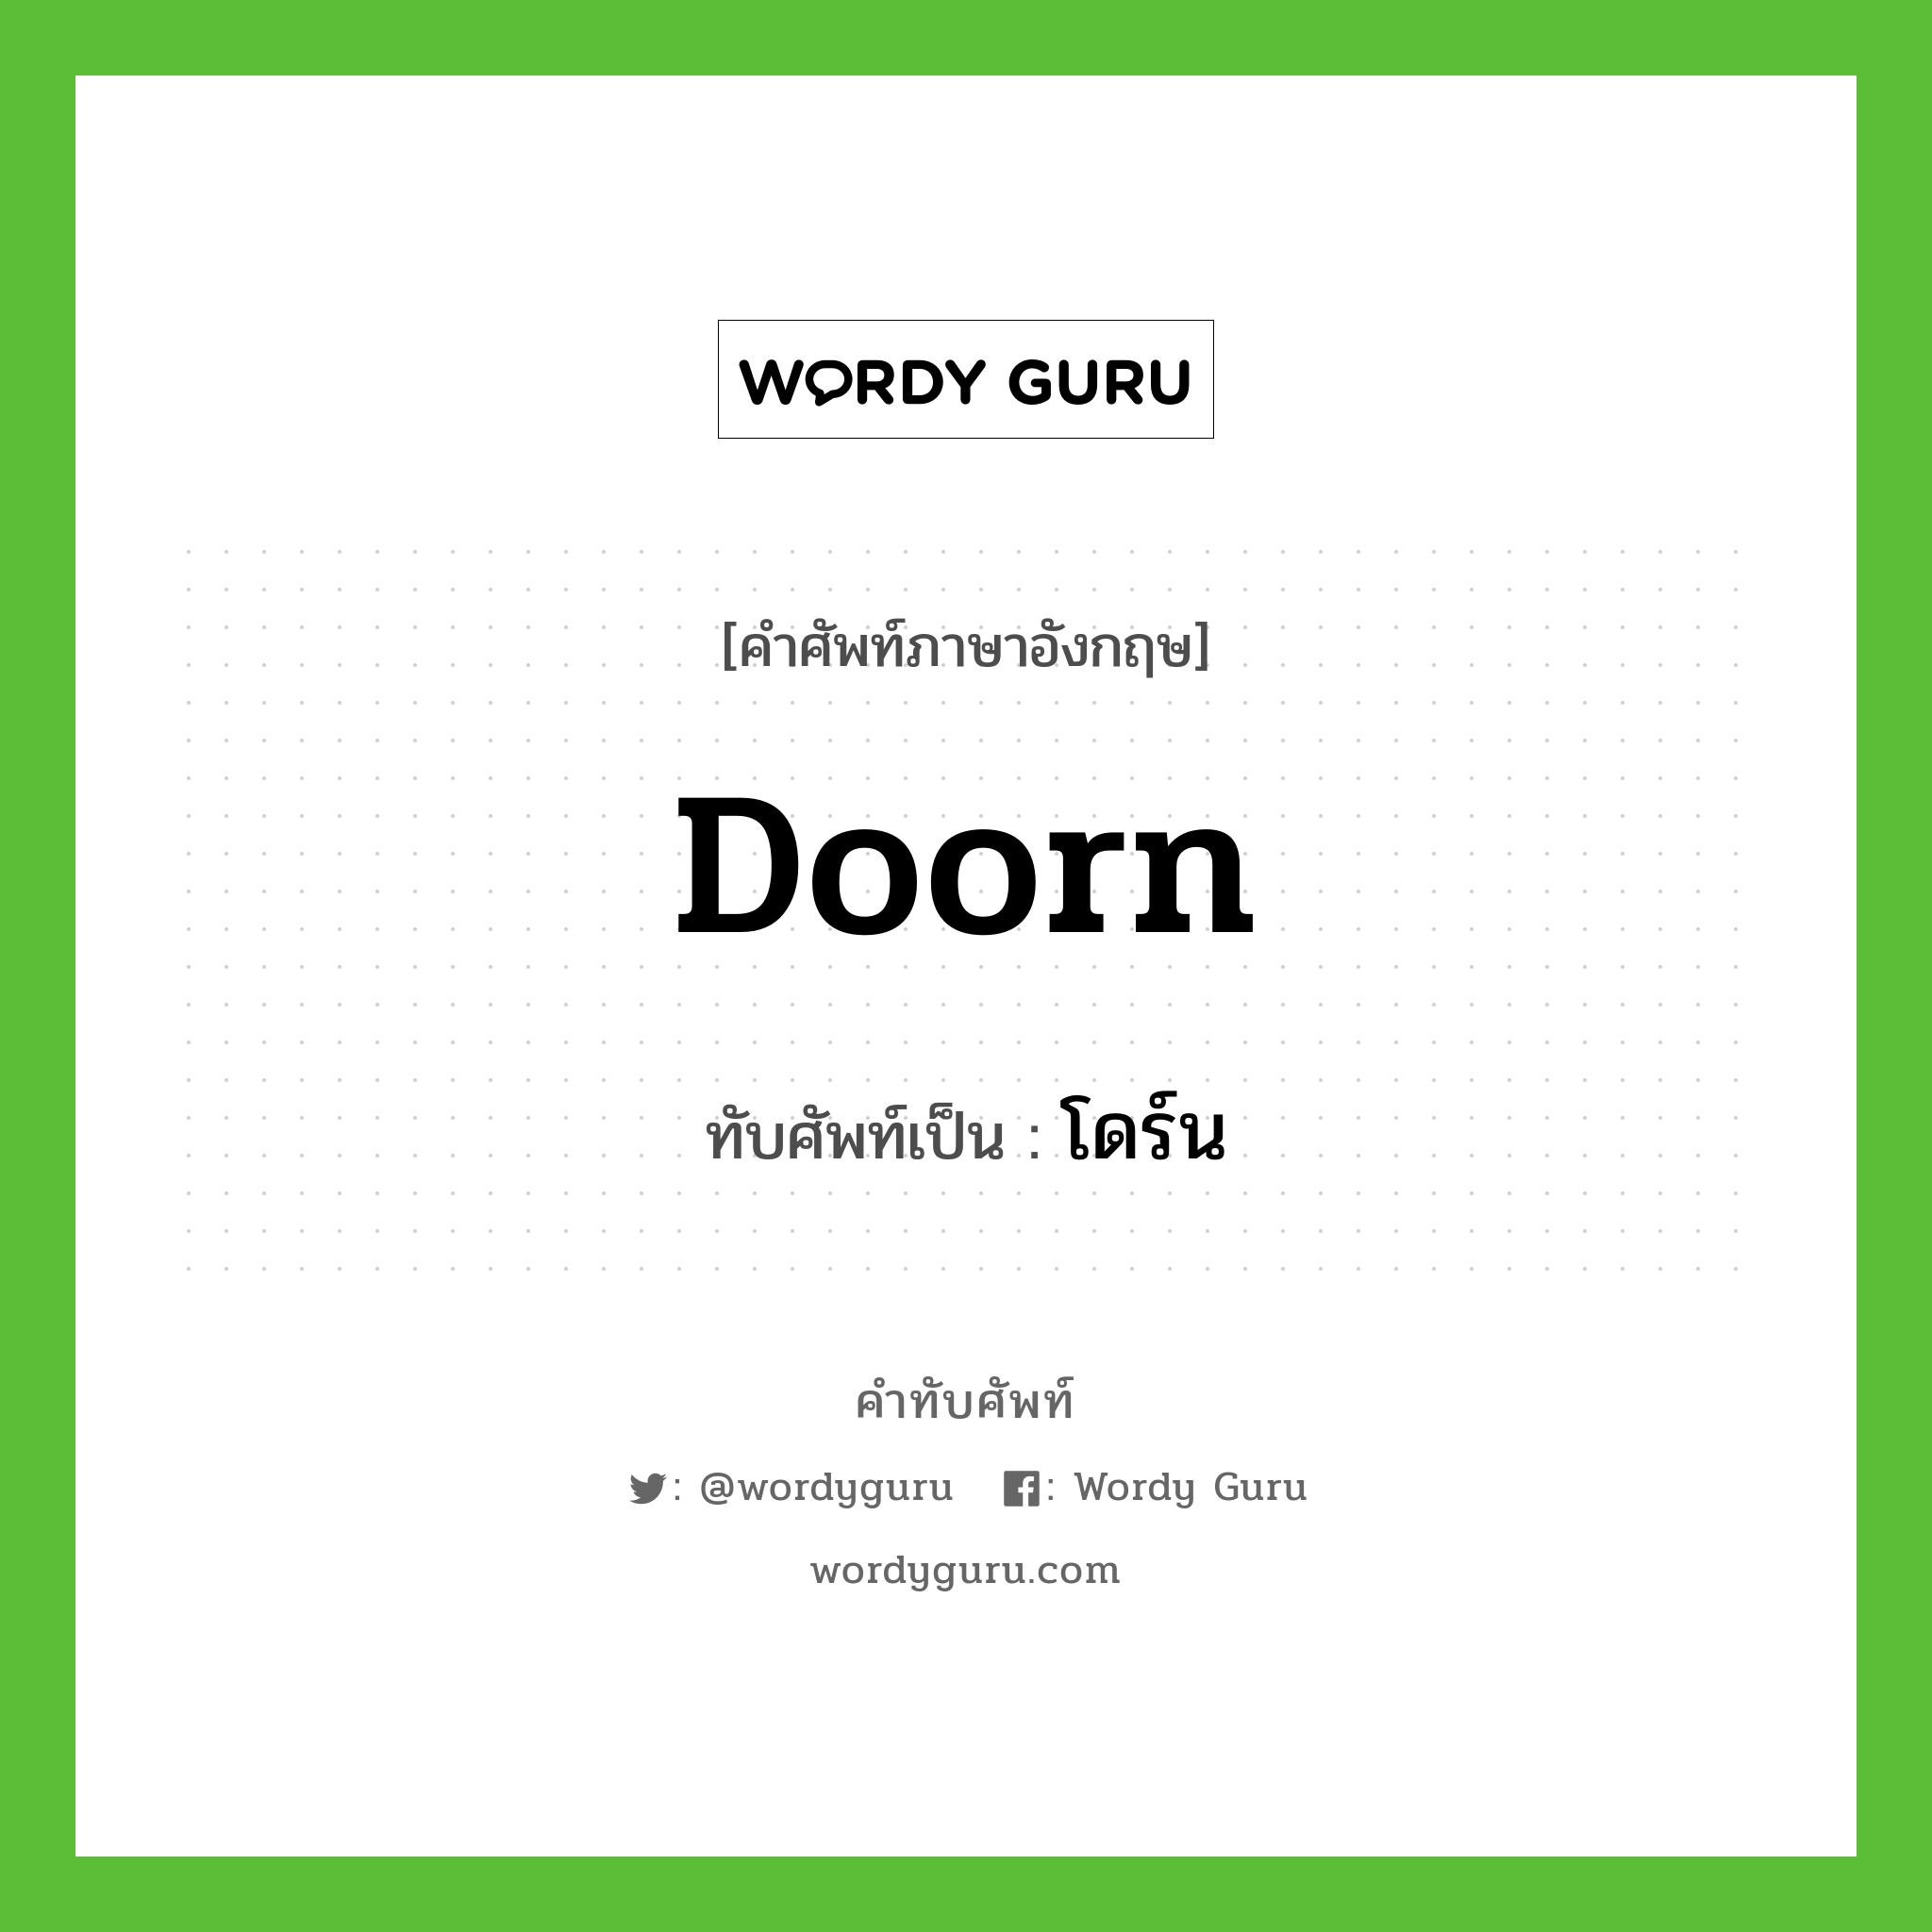 Doorn เขียนเป็นคำไทยว่าอะไร?, คำศัพท์ภาษาอังกฤษ Doorn ทับศัพท์เป็น โดร์น